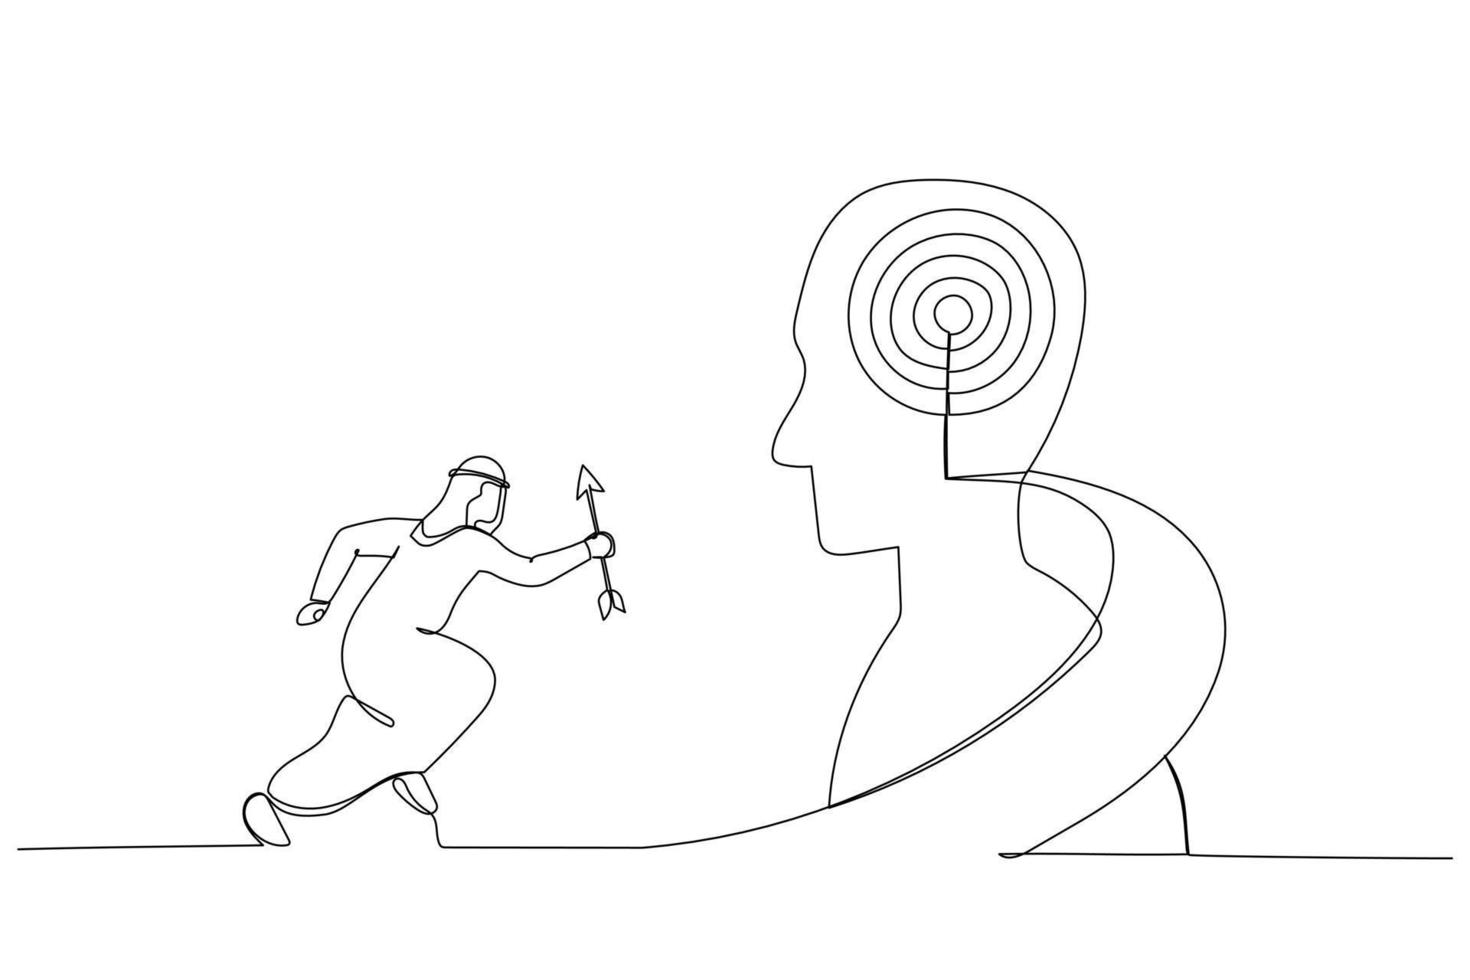 ilustração do empresário árabe segure a seta subindo a escada para o alvo na cabeça humana. metáfora para crescimento, sucesso, alvo, posicionamento. estilo de arte de linha única vetor